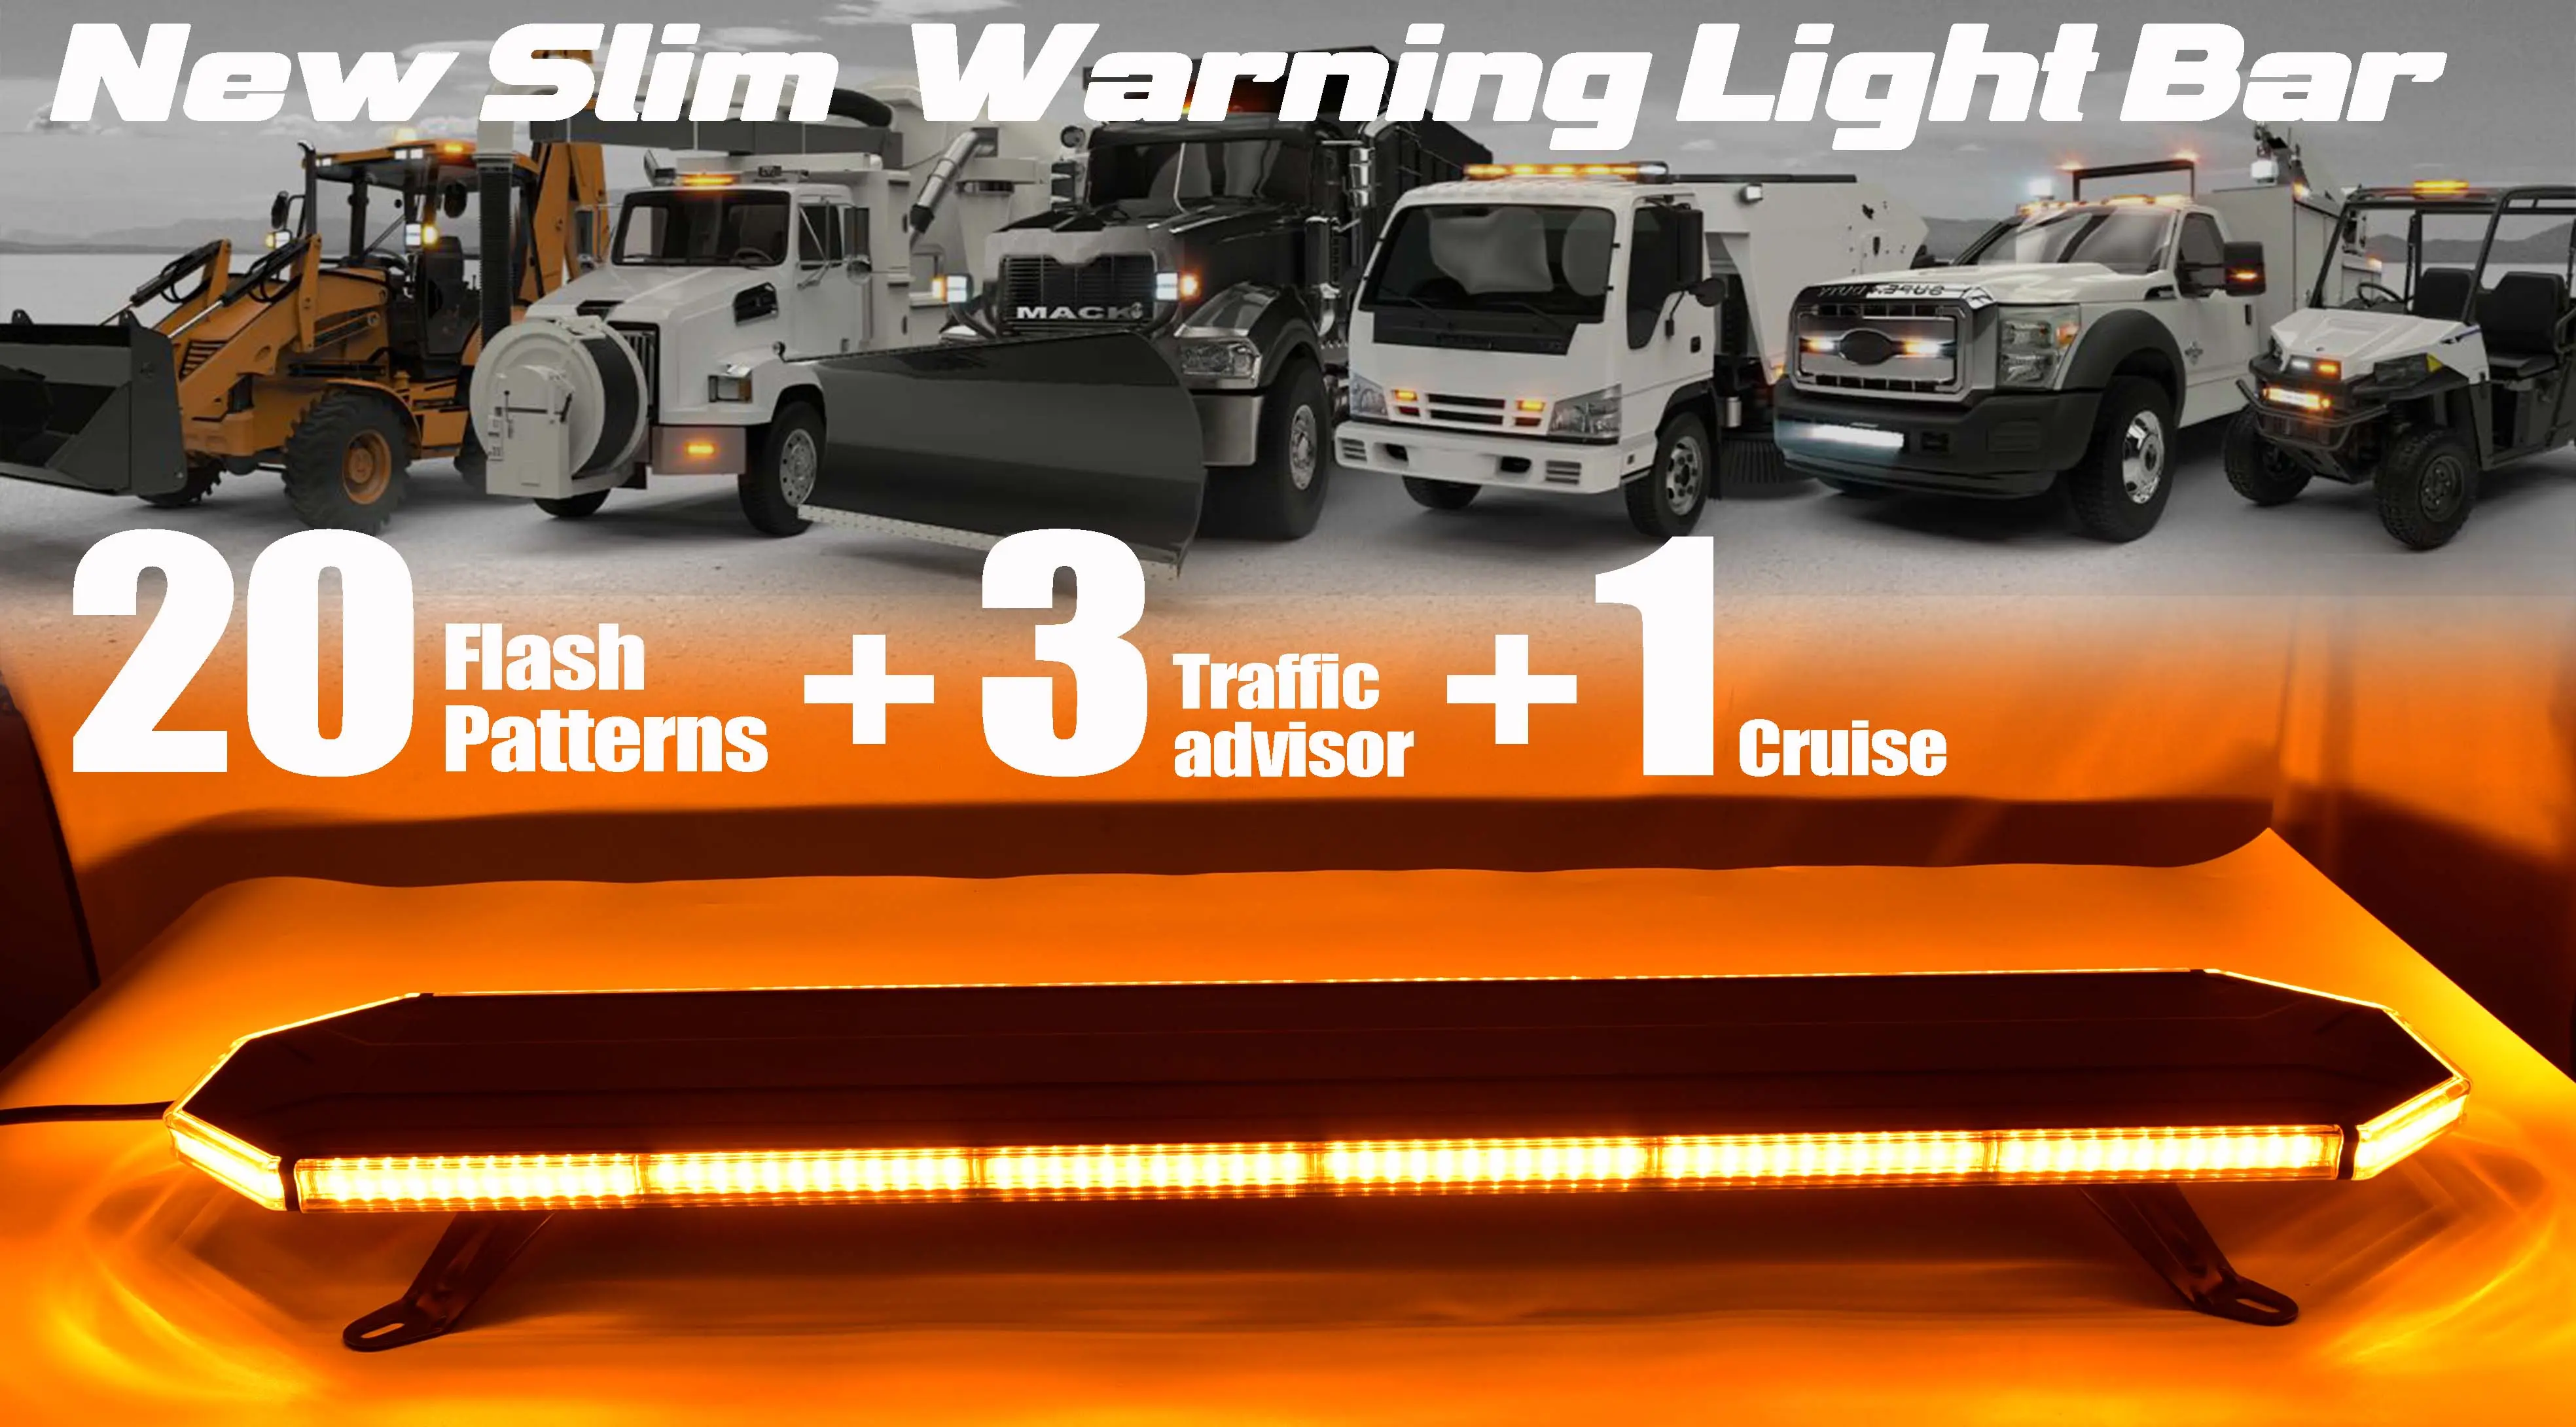 Aluminum Cover LED Warning light bar Slim Emergency Light Bar For Ambulance Patrol Strobe Lights